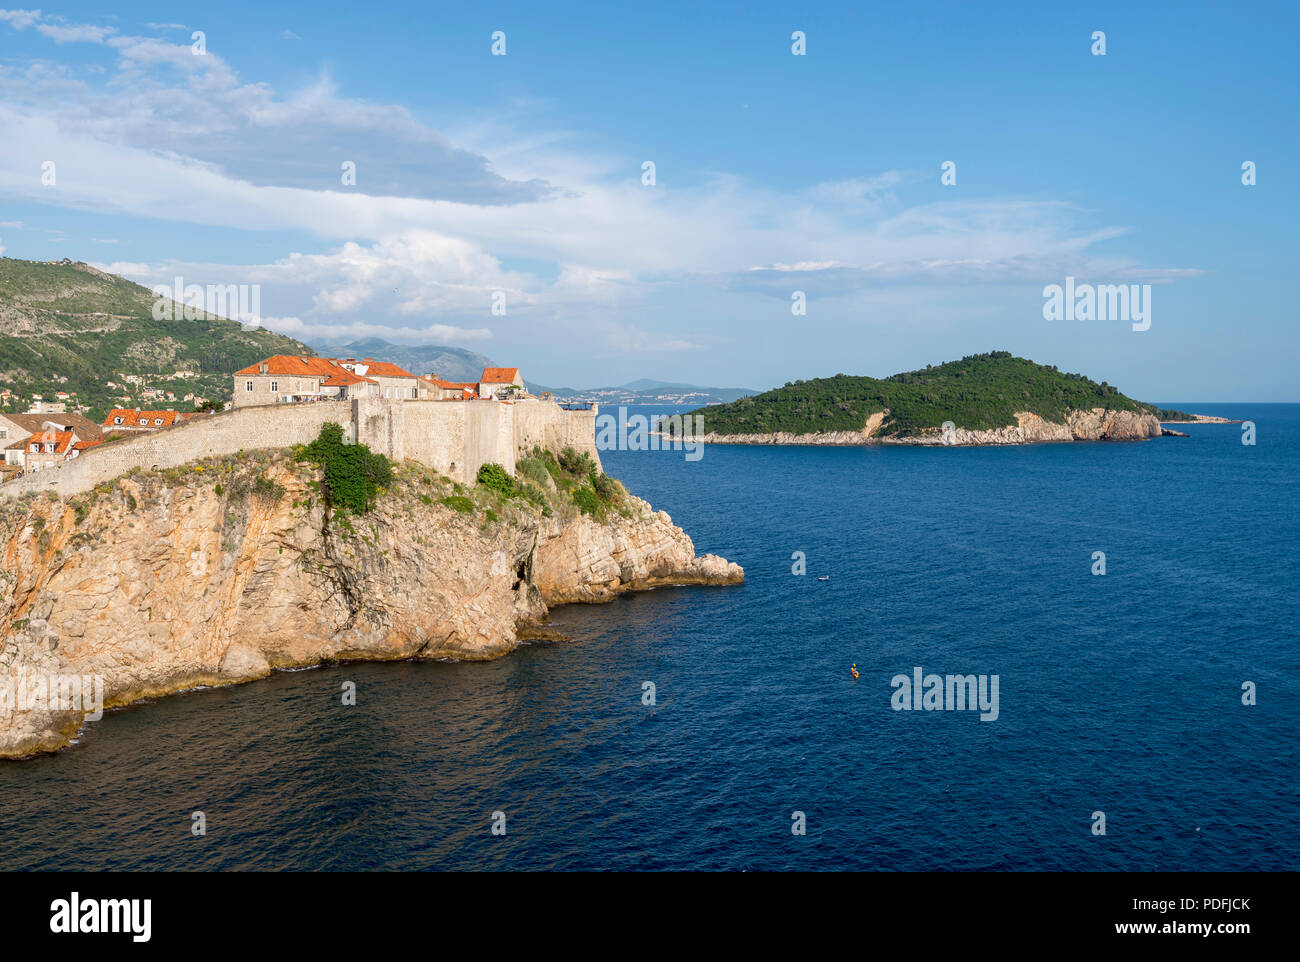 La vista del casco antiguo de Dubrovnik y la isla Lokrum desde Fort Lovrijenac. Foto de stock